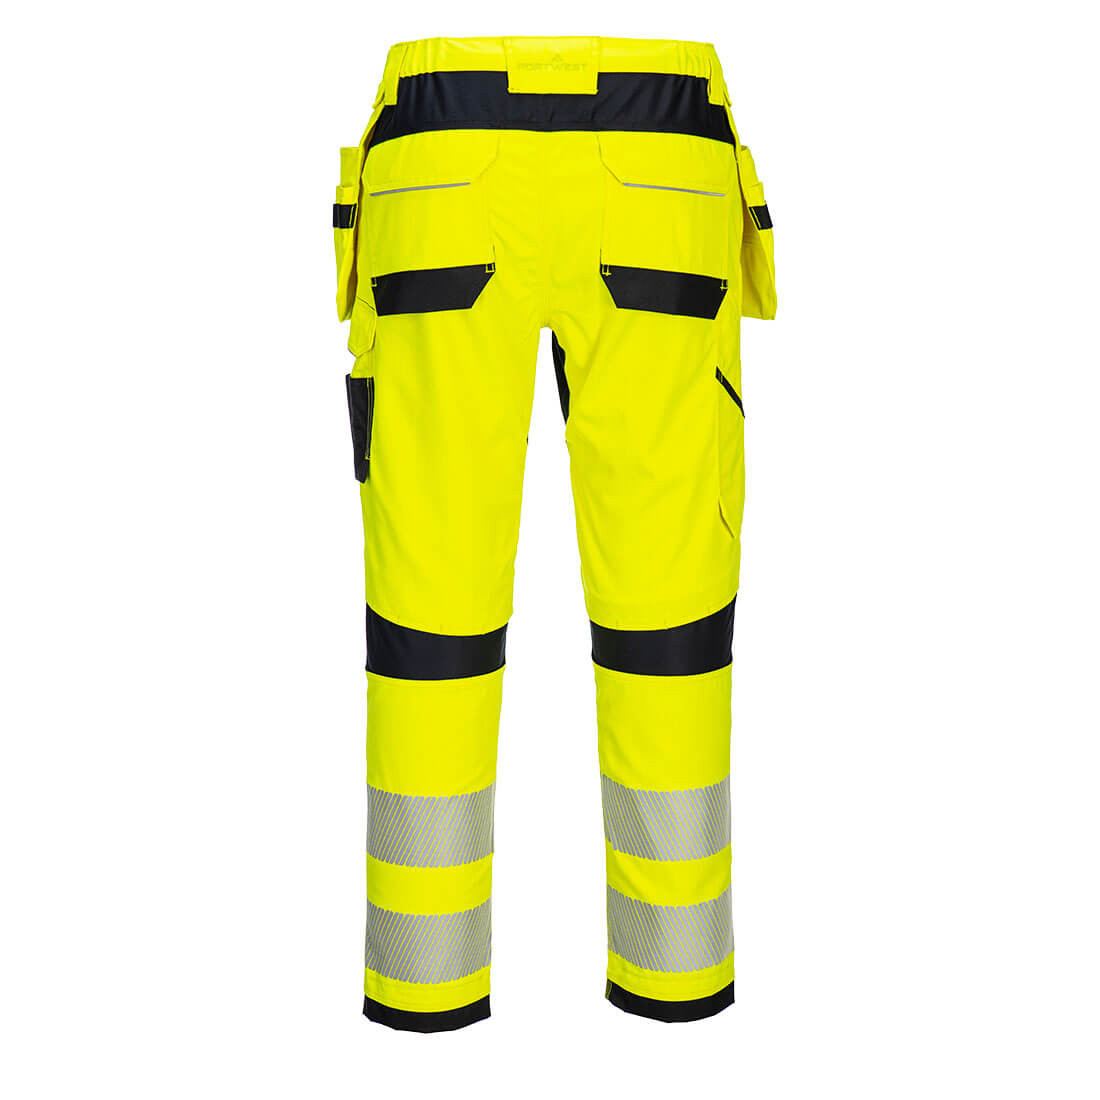 Pantalon Holster PW3 FR Hi-Vis - Les vêtements de protection